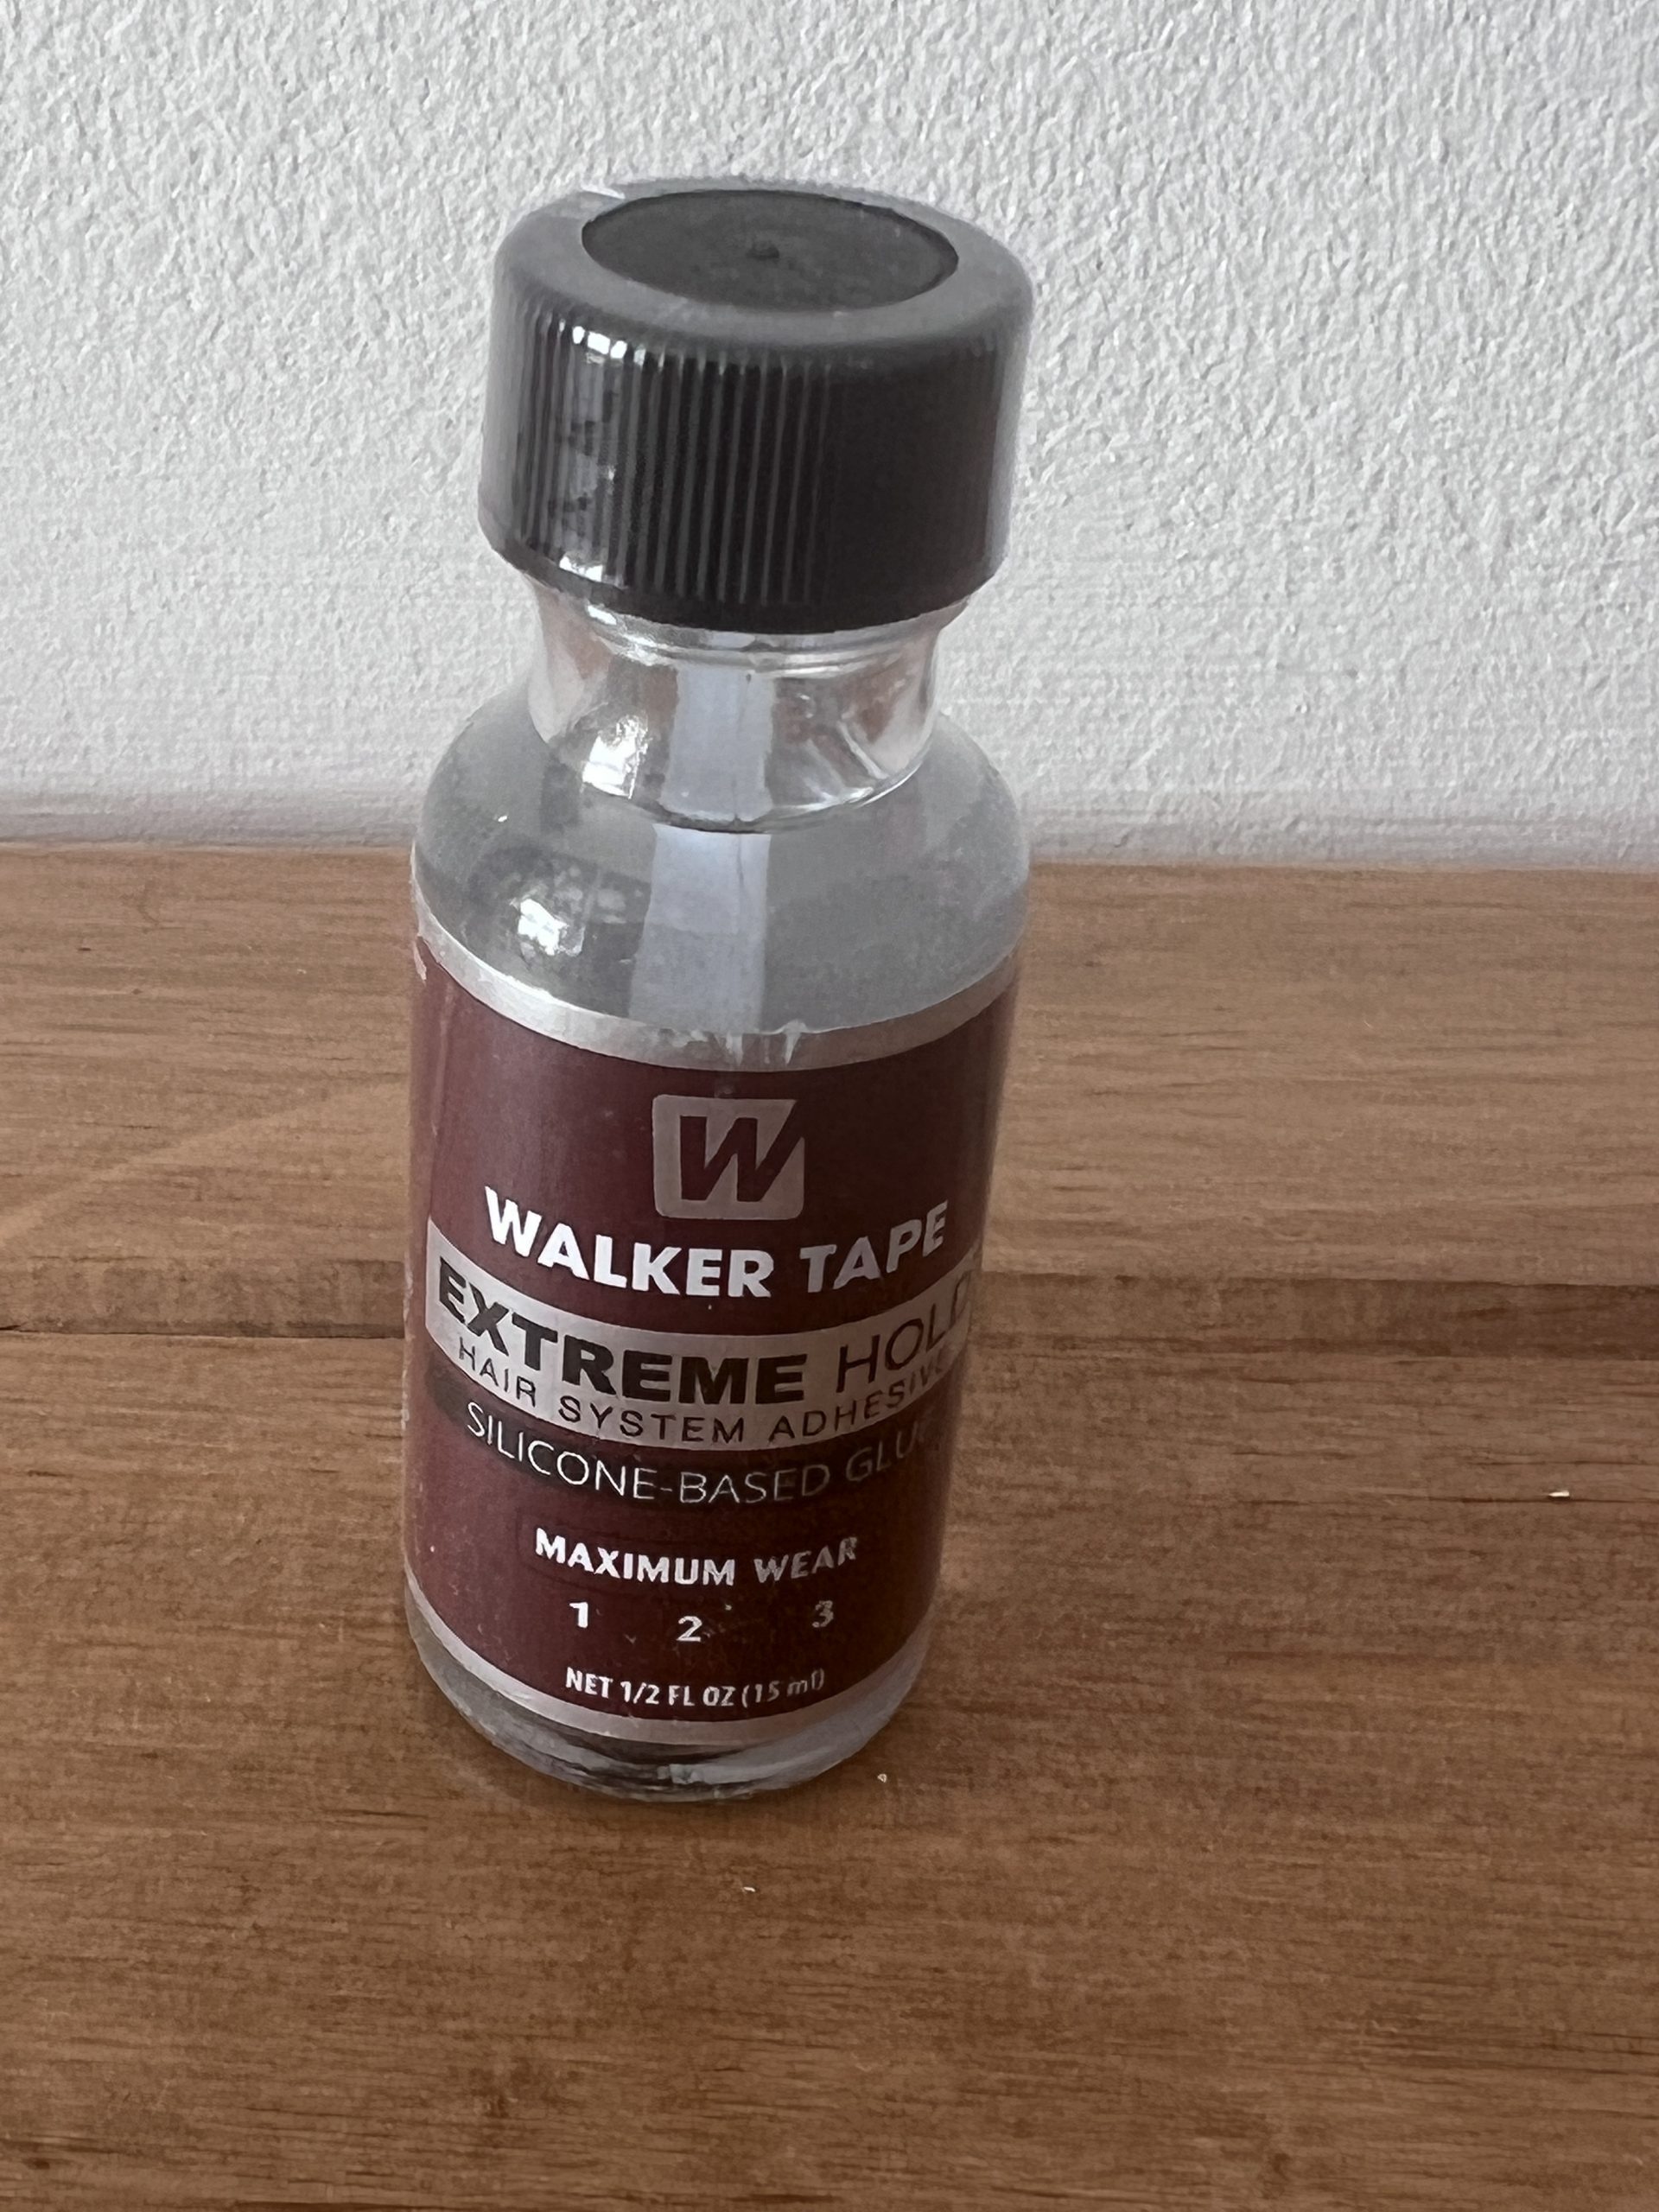  Walker Tape Extreme Hold Silicone-Based Glue Maximum